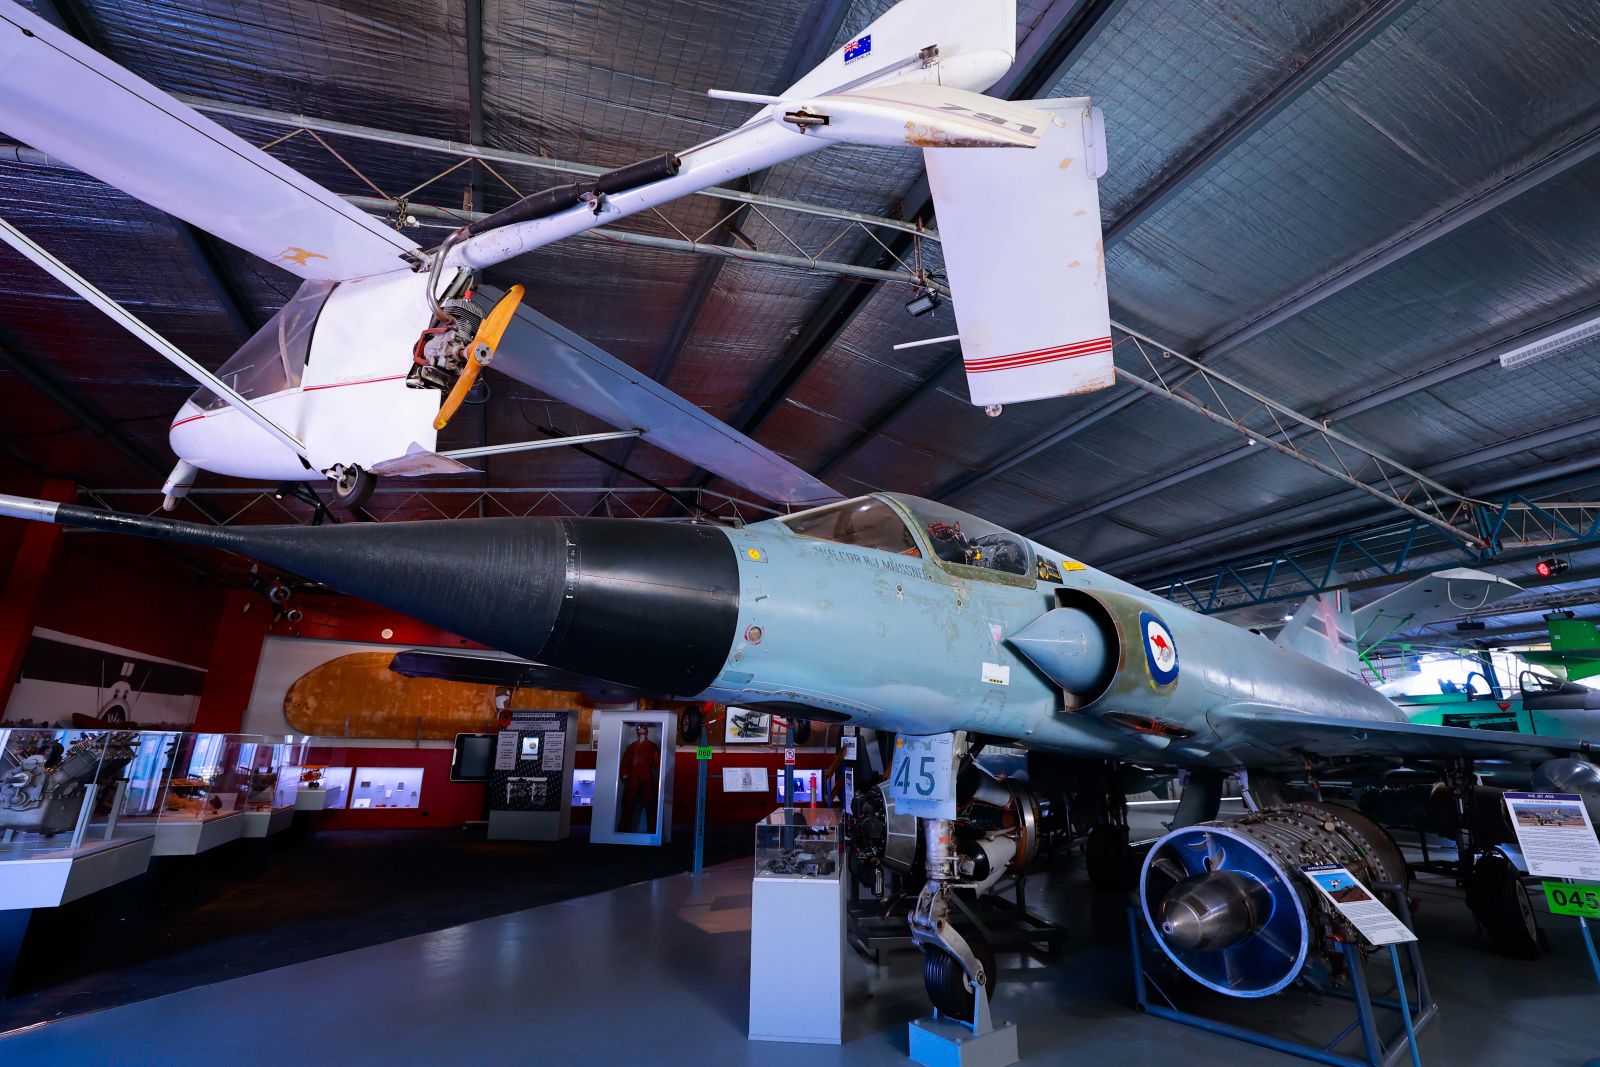 Chiến đấu cơ G.A.F Mirage A3-45 sản xuất năm 1967 tại Pháp, được sử dụng trong lực lượng không quân Hoàng gia Úc trước khi được đưa về Bảo tàng năm 1993.